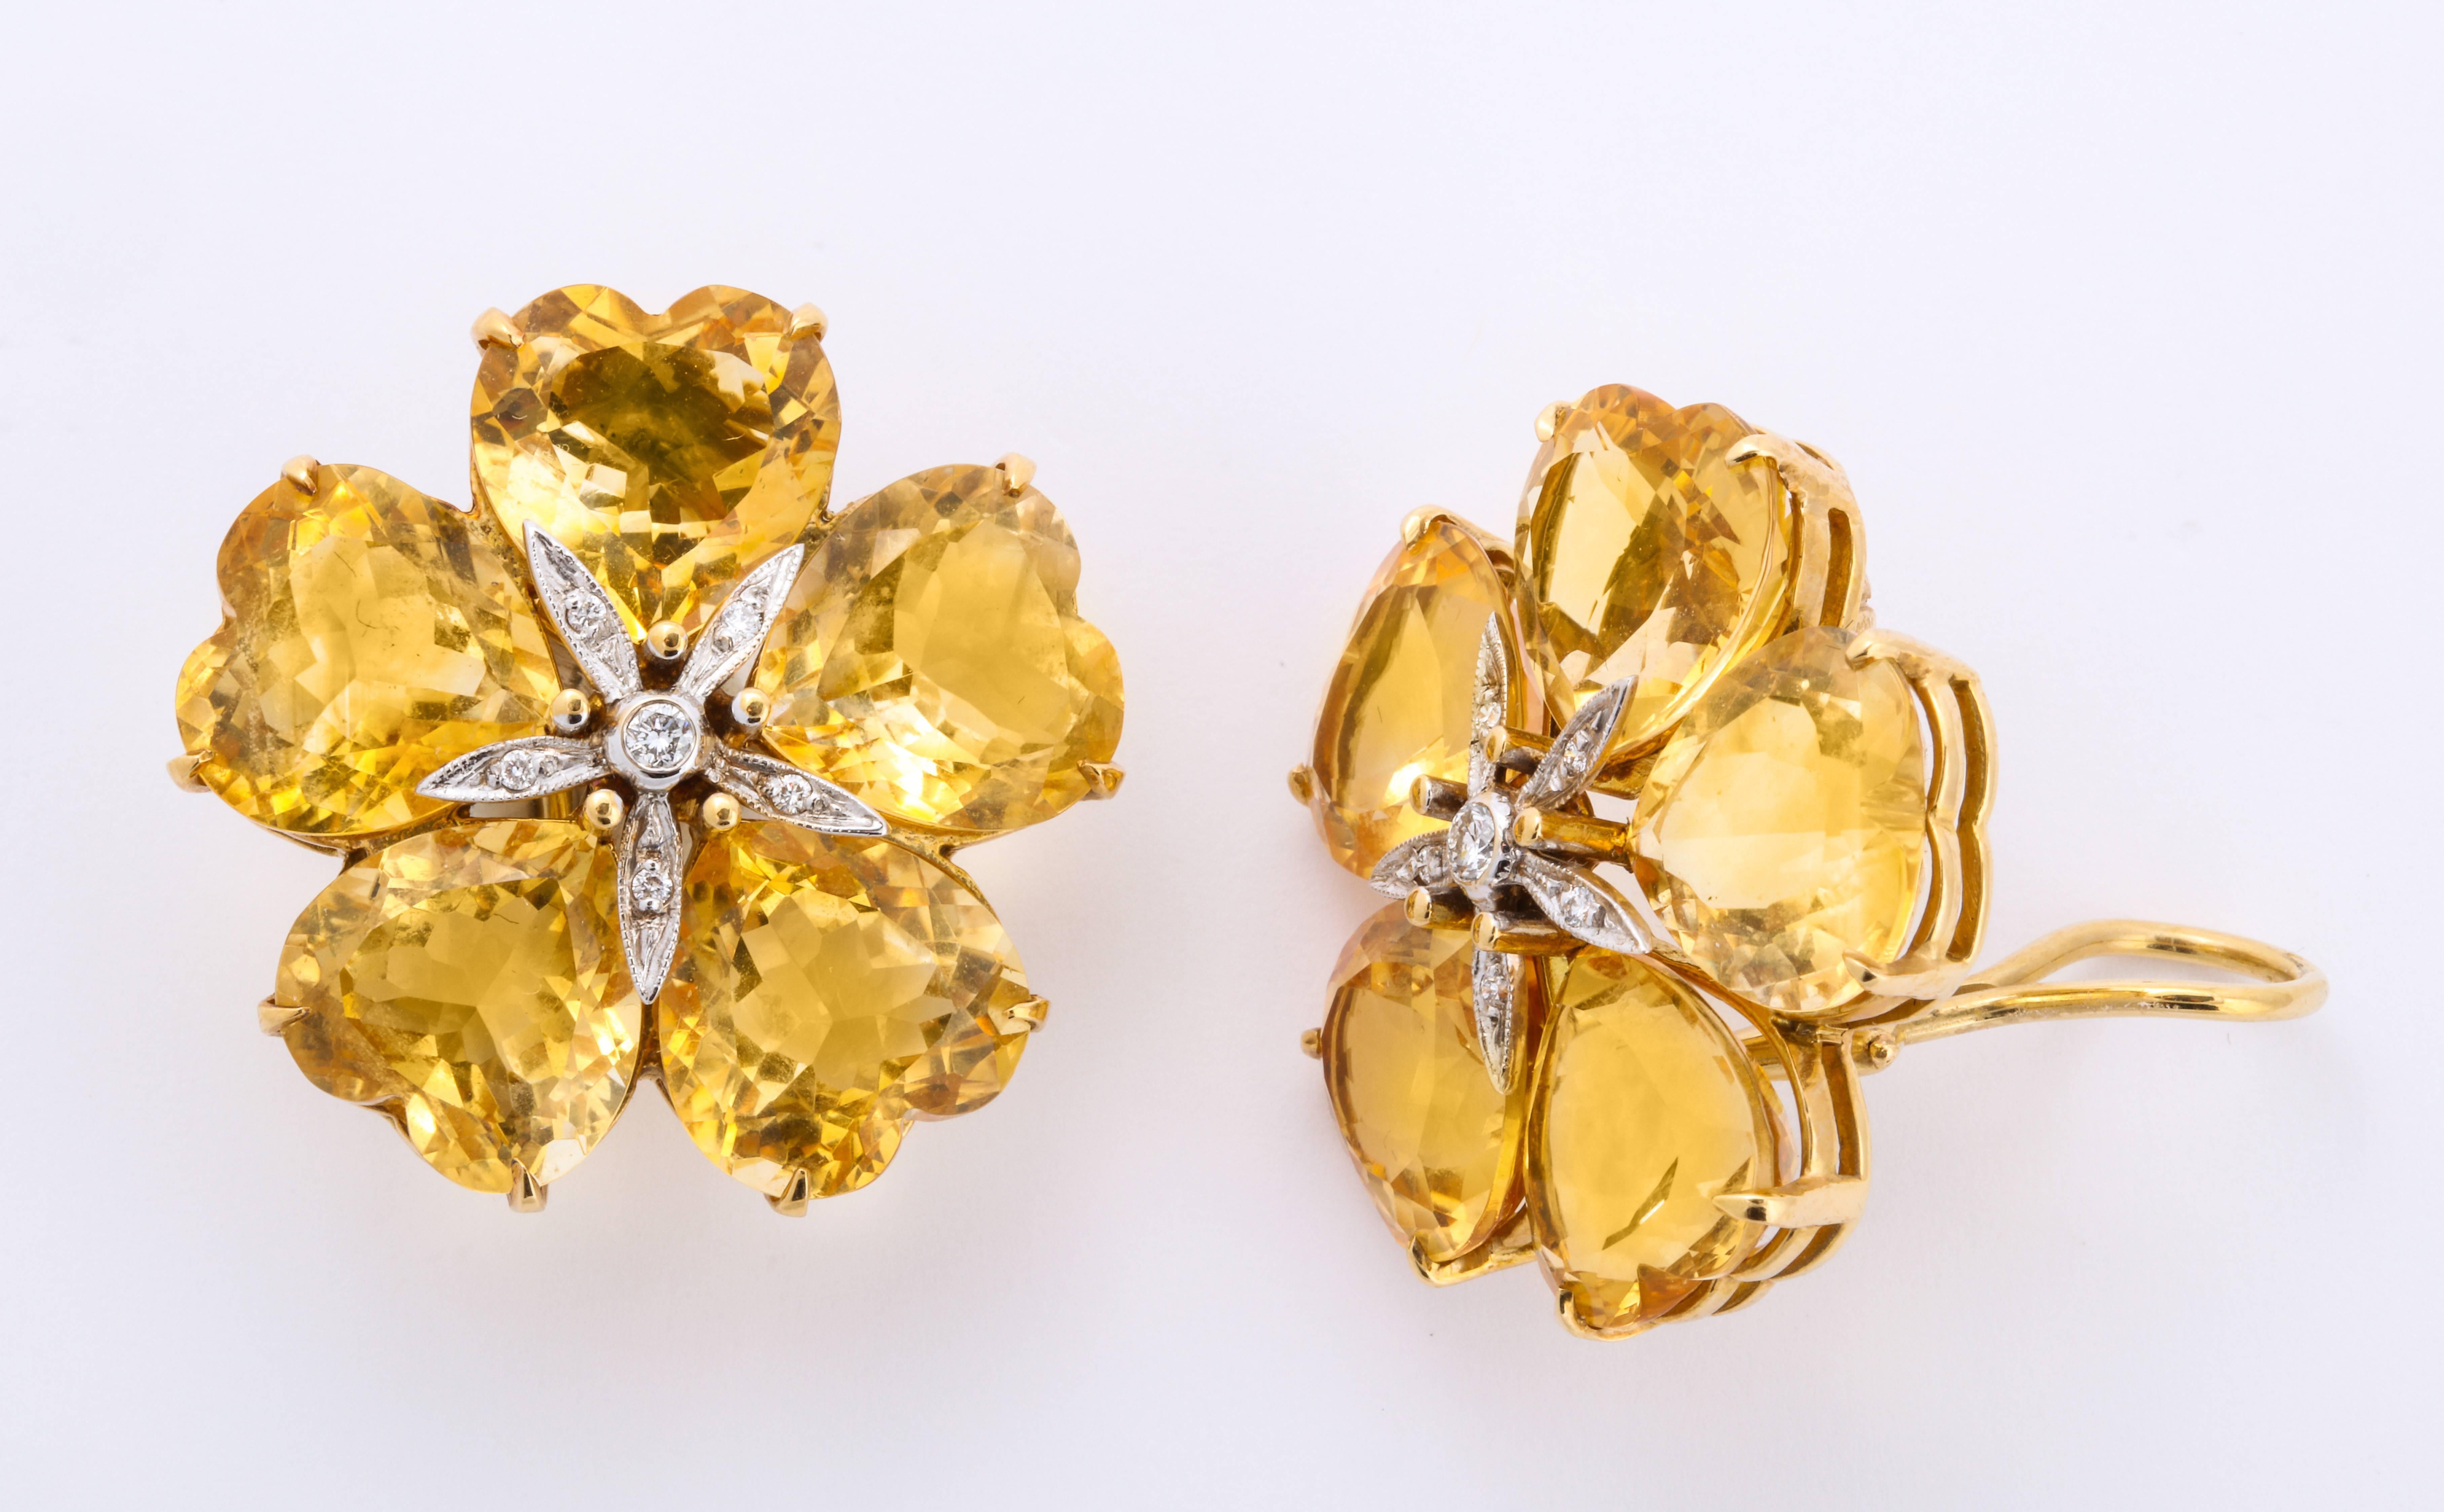 Leuchtend gelbe, herzförmige Zitrine sind sorgfältig um einen Diamanten in der Mitte angeordnet und bilden eine wunderschöne Blume.  Gerade groß genug, um die richtige Wirkung zu erzielen, ohne zu schwer zu sein, sind diese wunderschönen Ohrringe